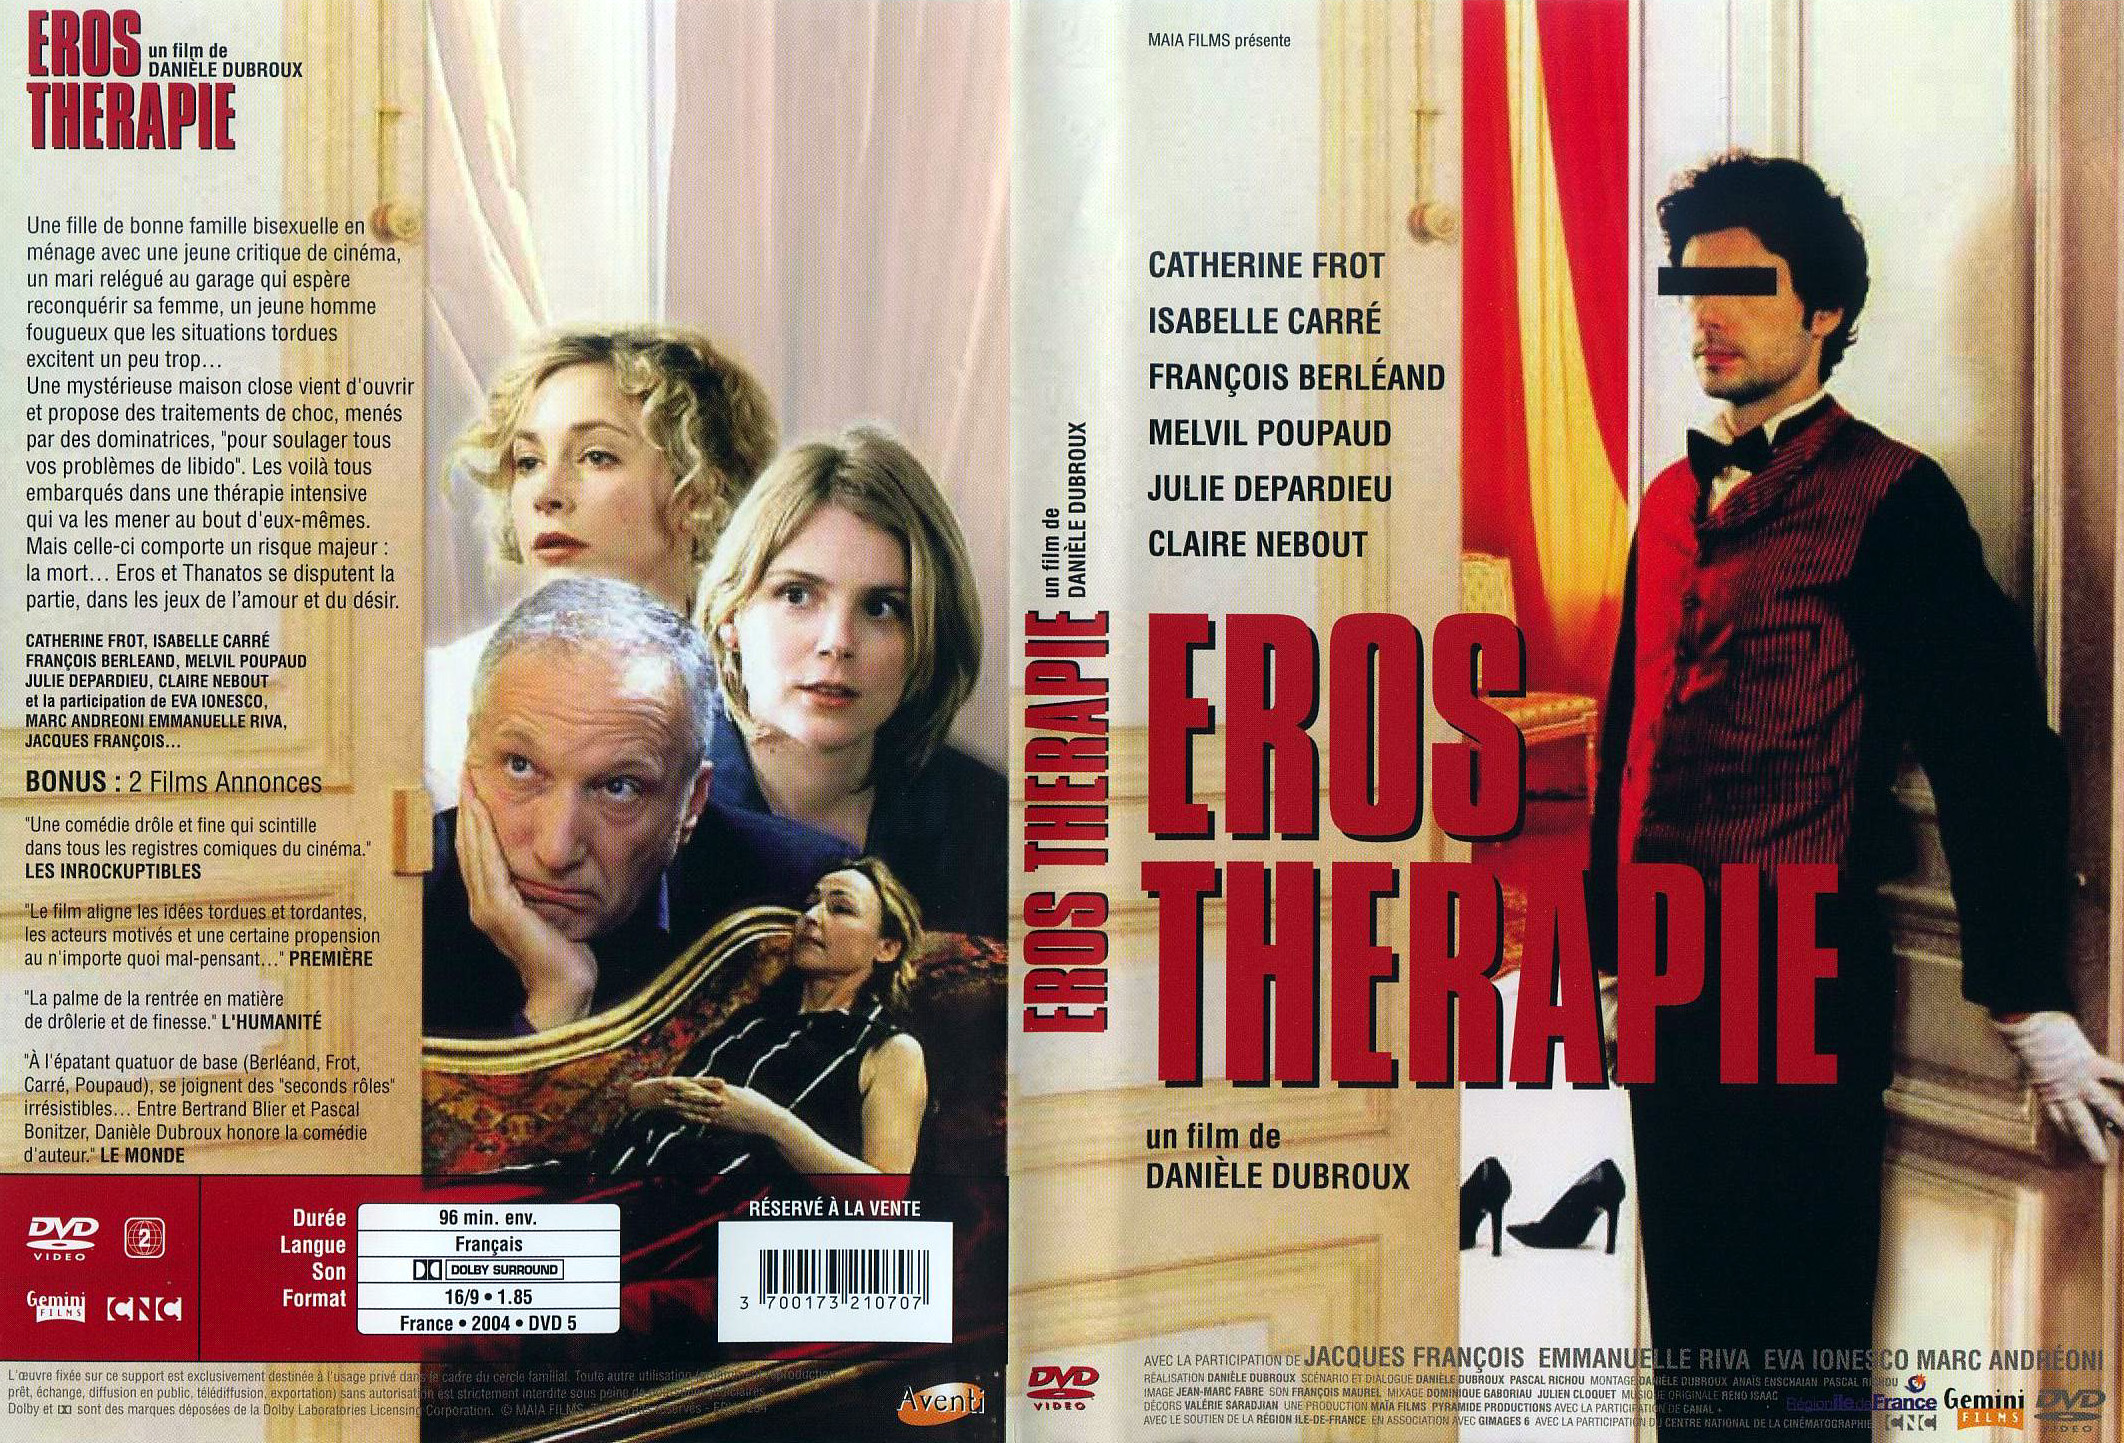 Jaquette DVD Eros therapie